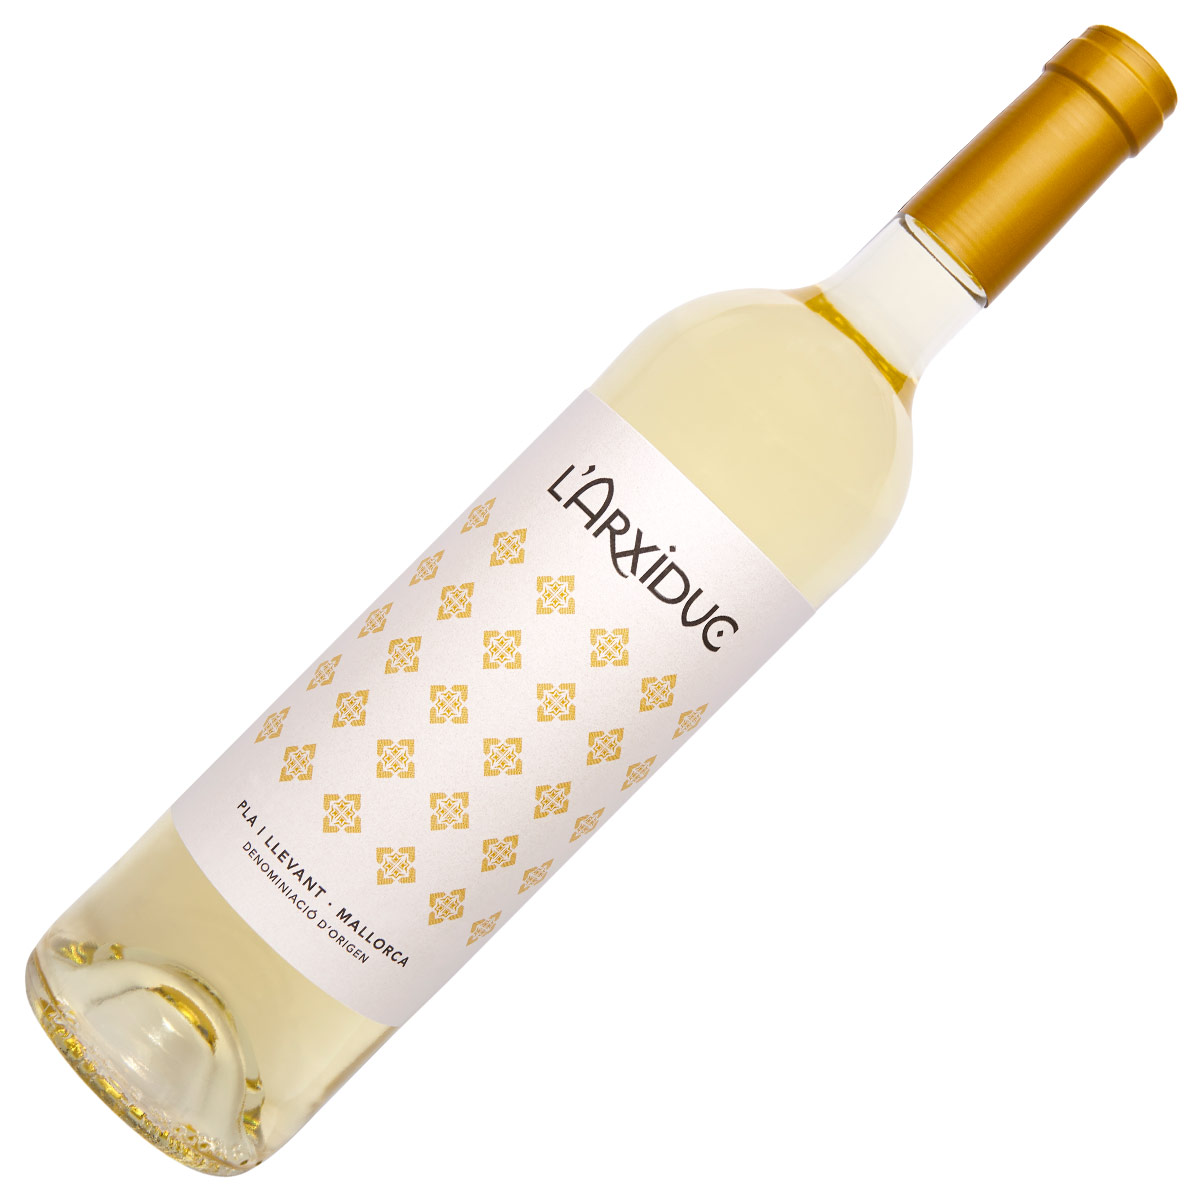 Pere Seda L\\'Arxiduc white wine D.O. Pla i Llevant